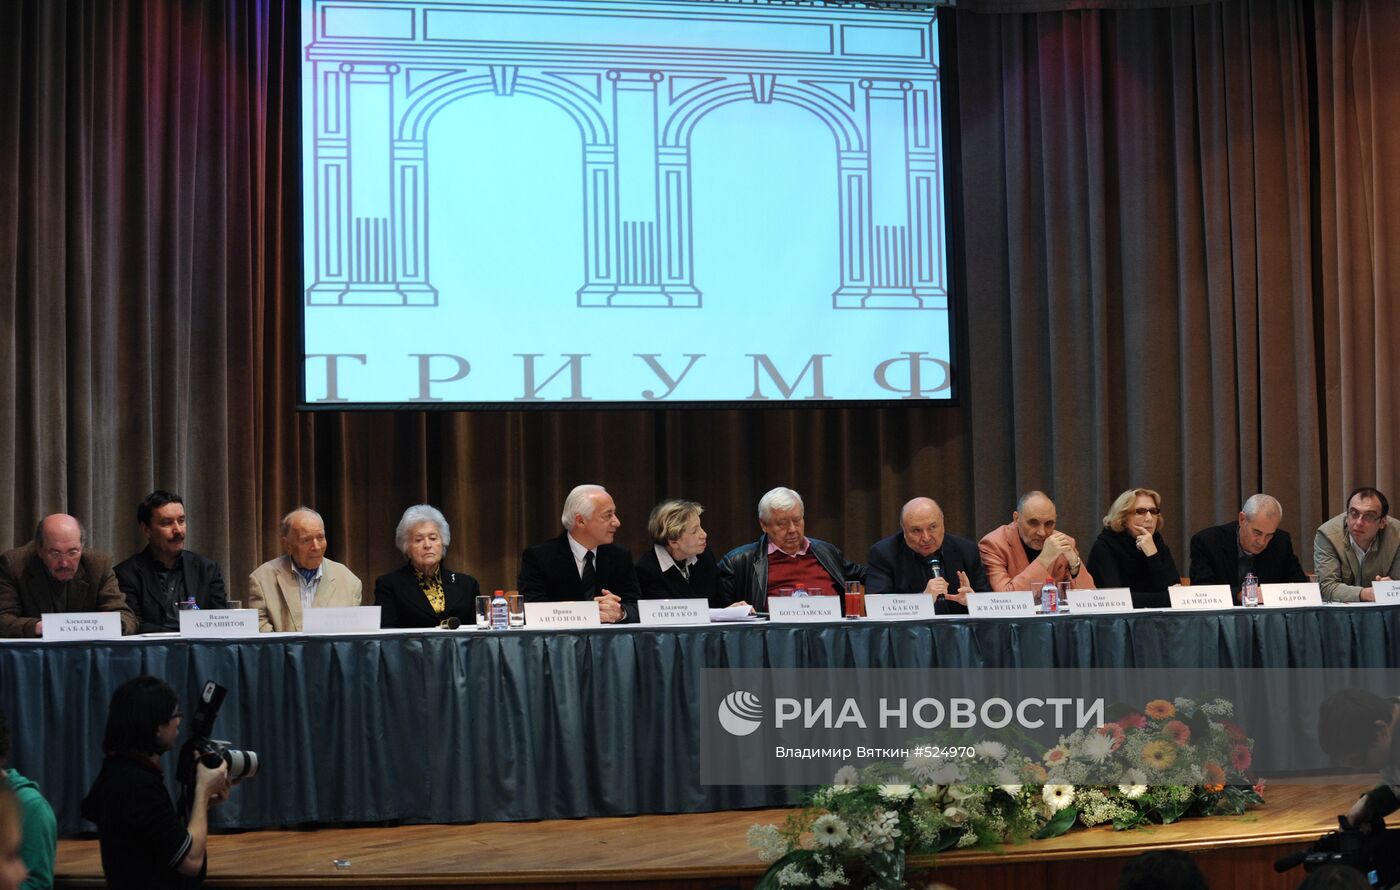 П/к, посвященная объявлению лауреатов премии "Триумф-2009"